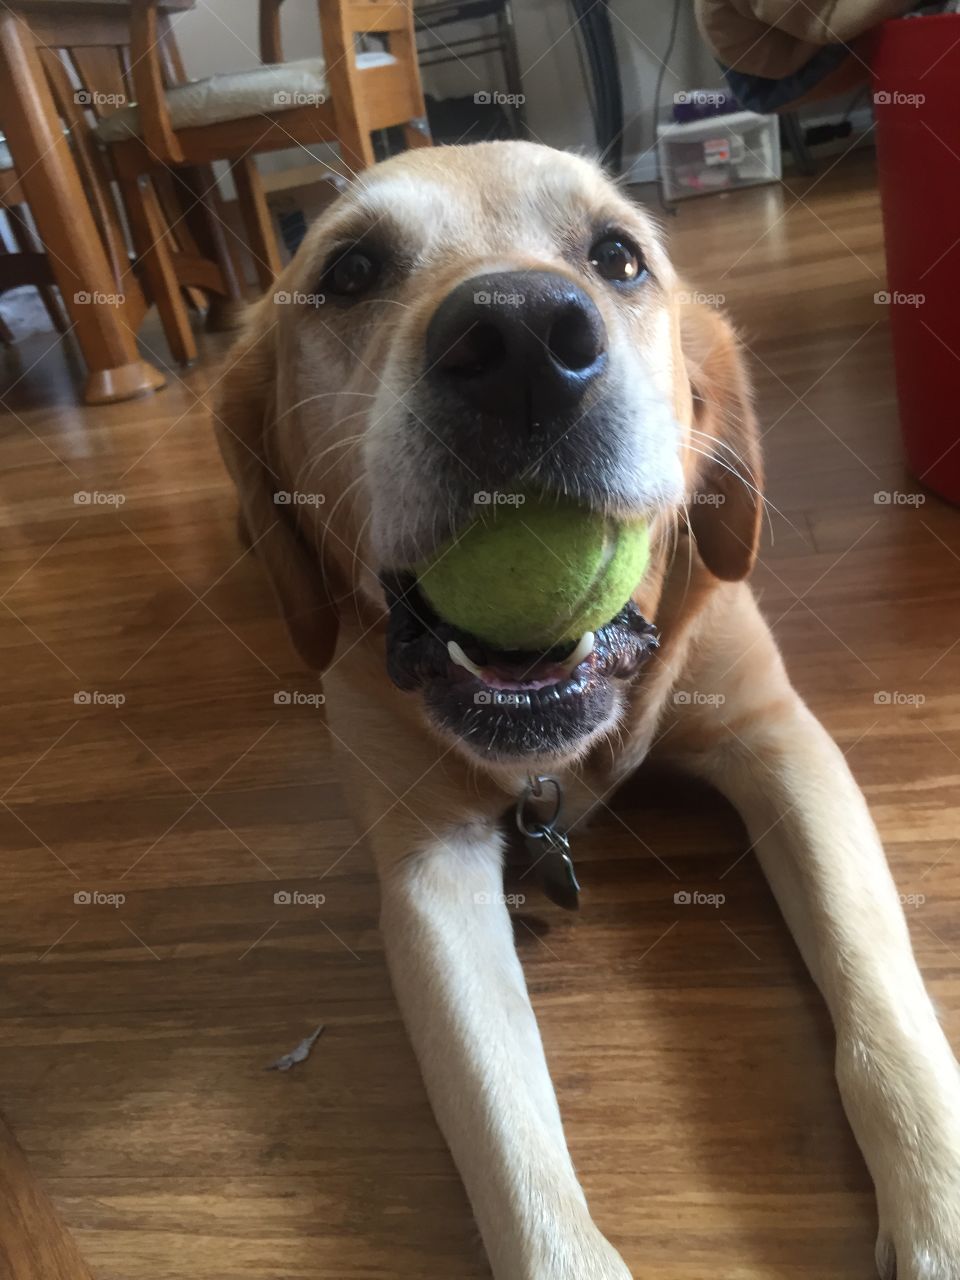 Dogs & Tennis. Playful Labrador Retriever